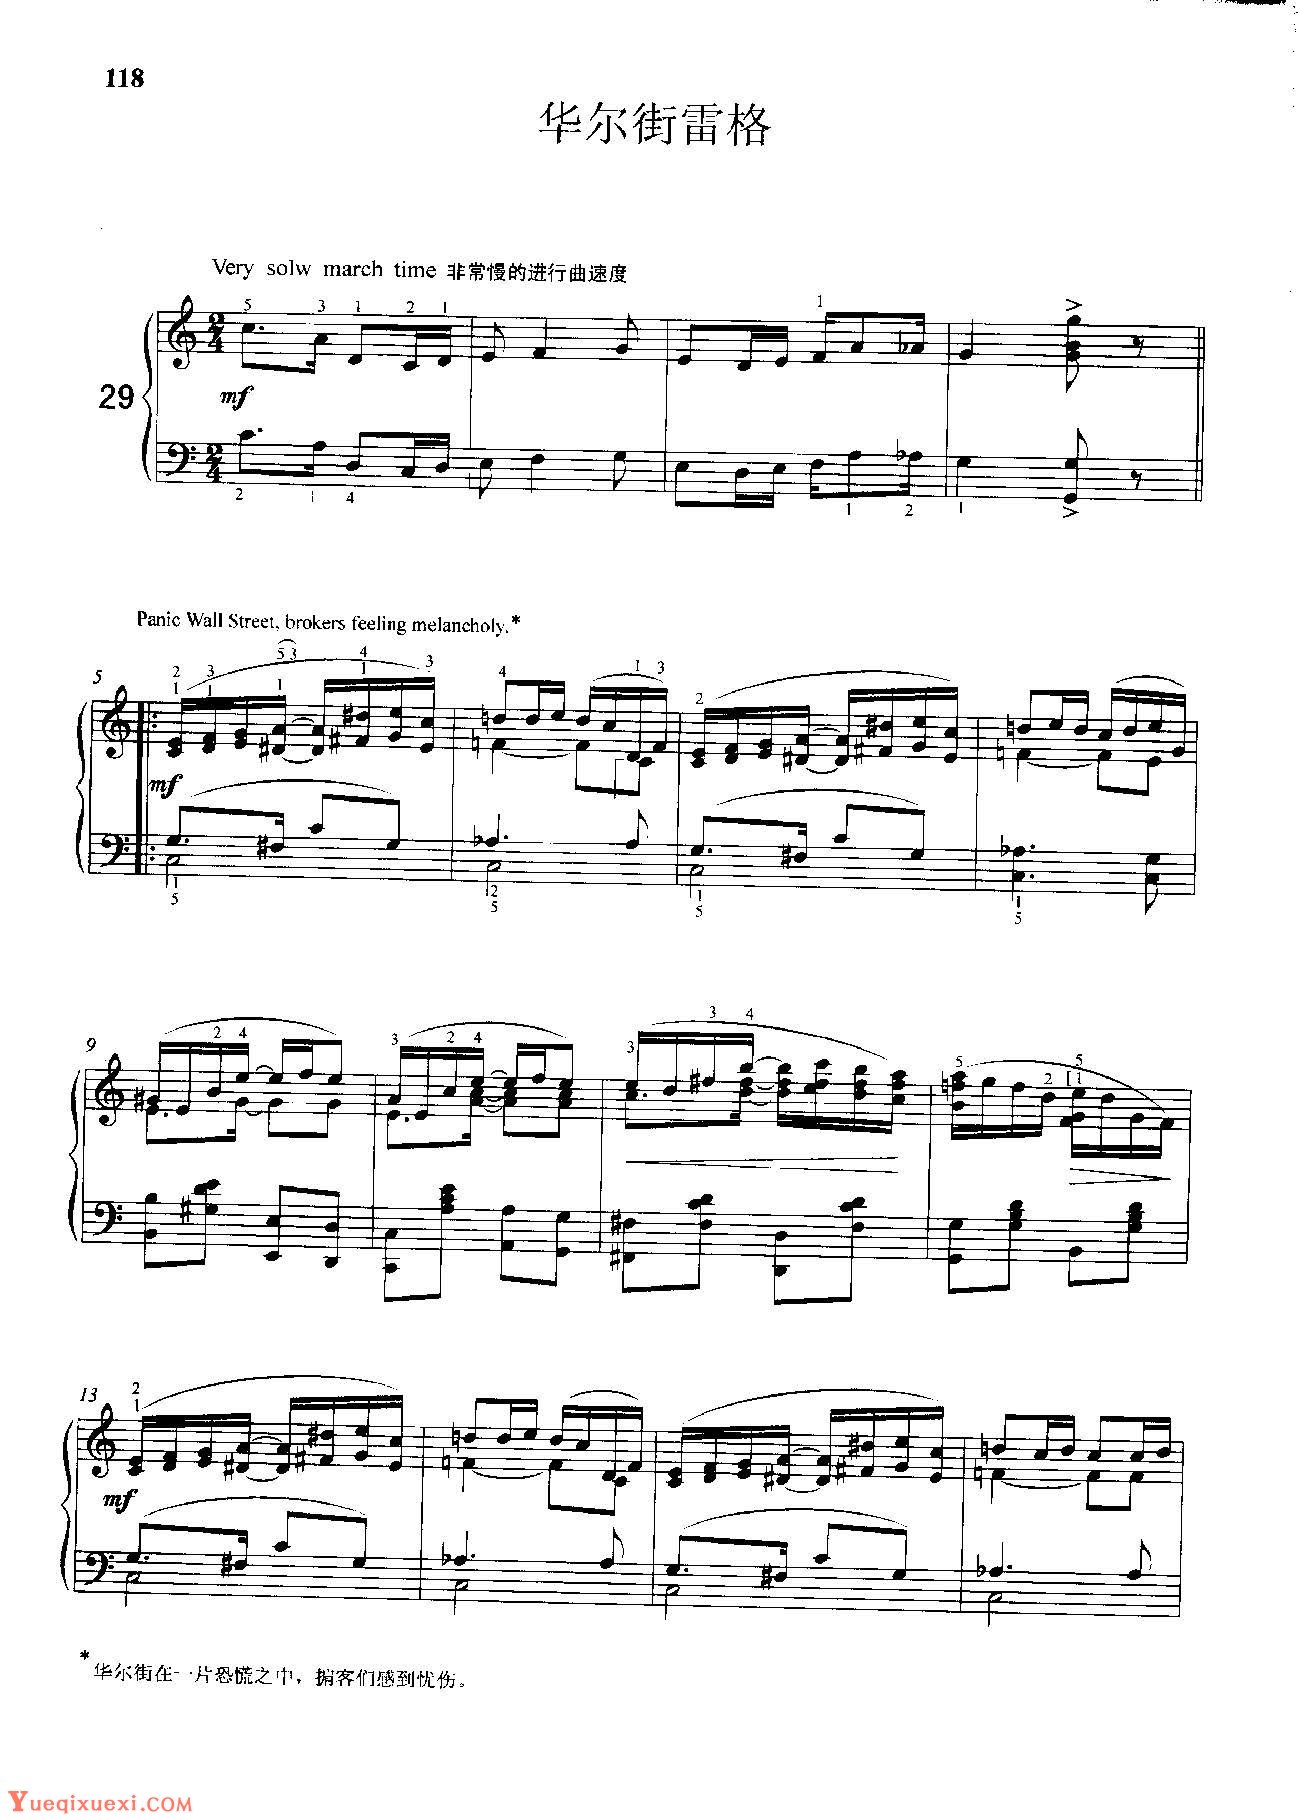 雷格泰姆钢琴乐谱《华尔街雷格》雷格泰姆之王斯科特·乔普林